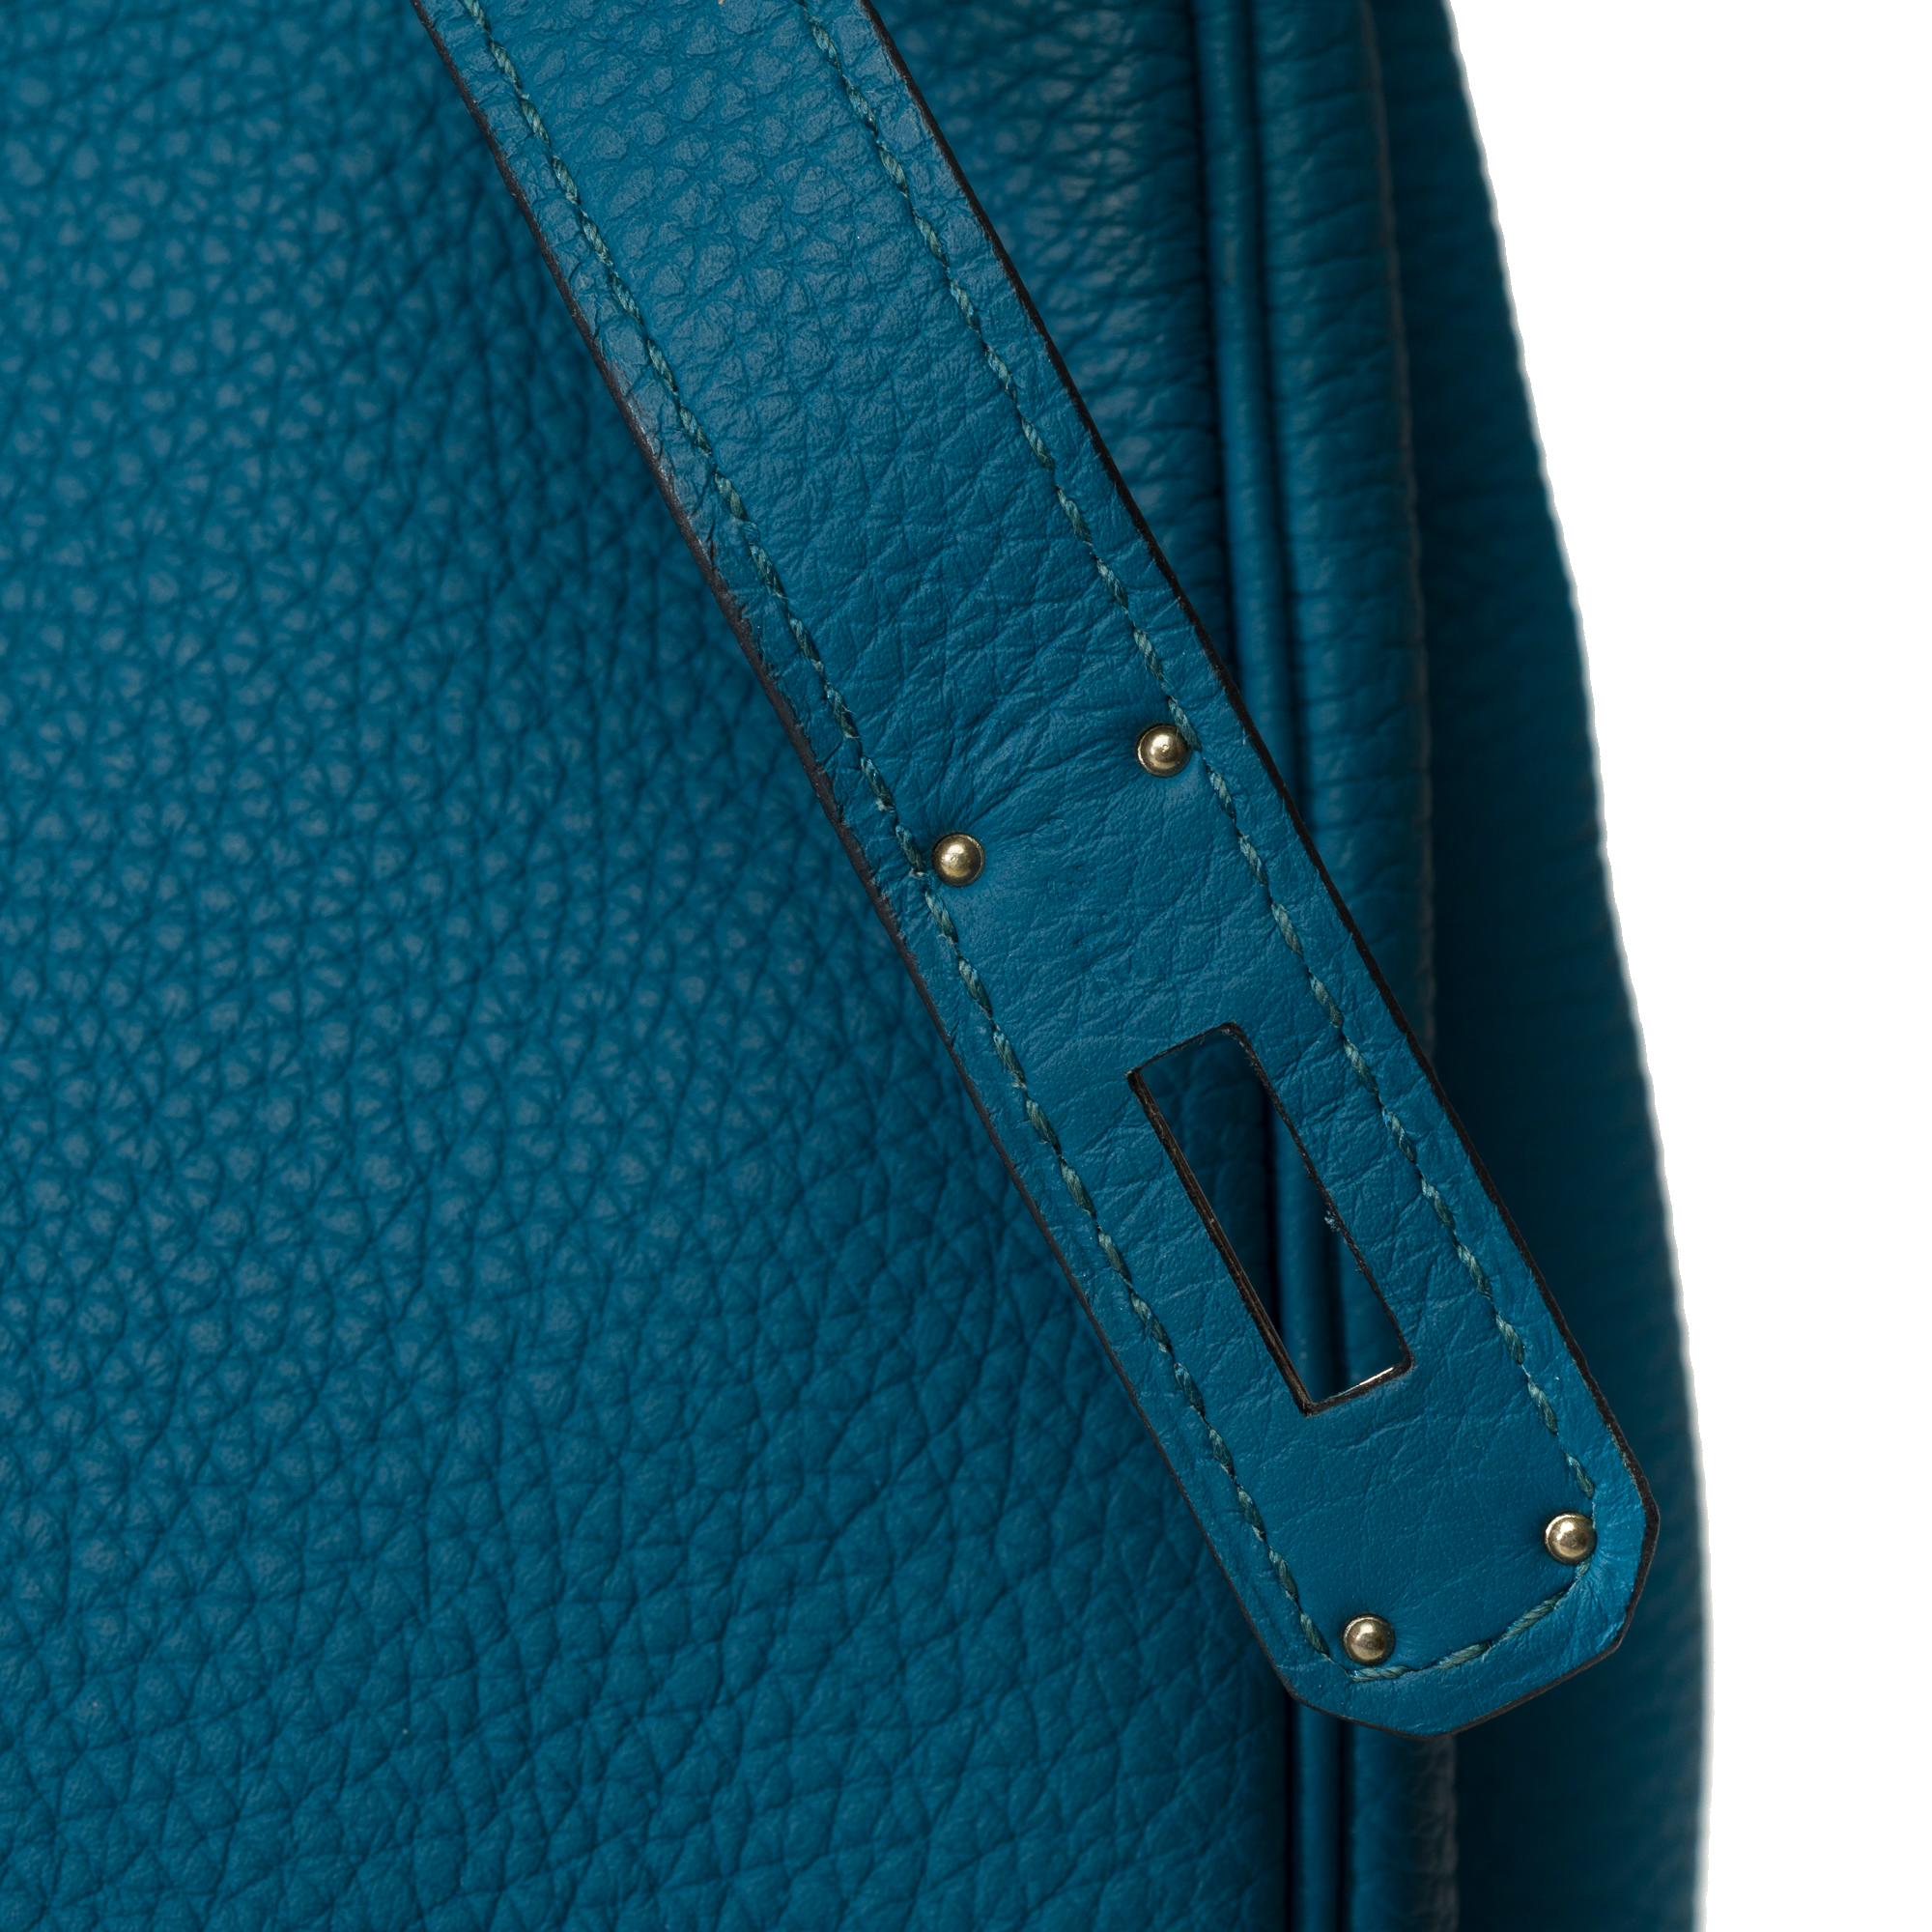 Amazing Hermes Birkin 35 handbag in Bleu Colvert Togo leather, SHW For Sale 4